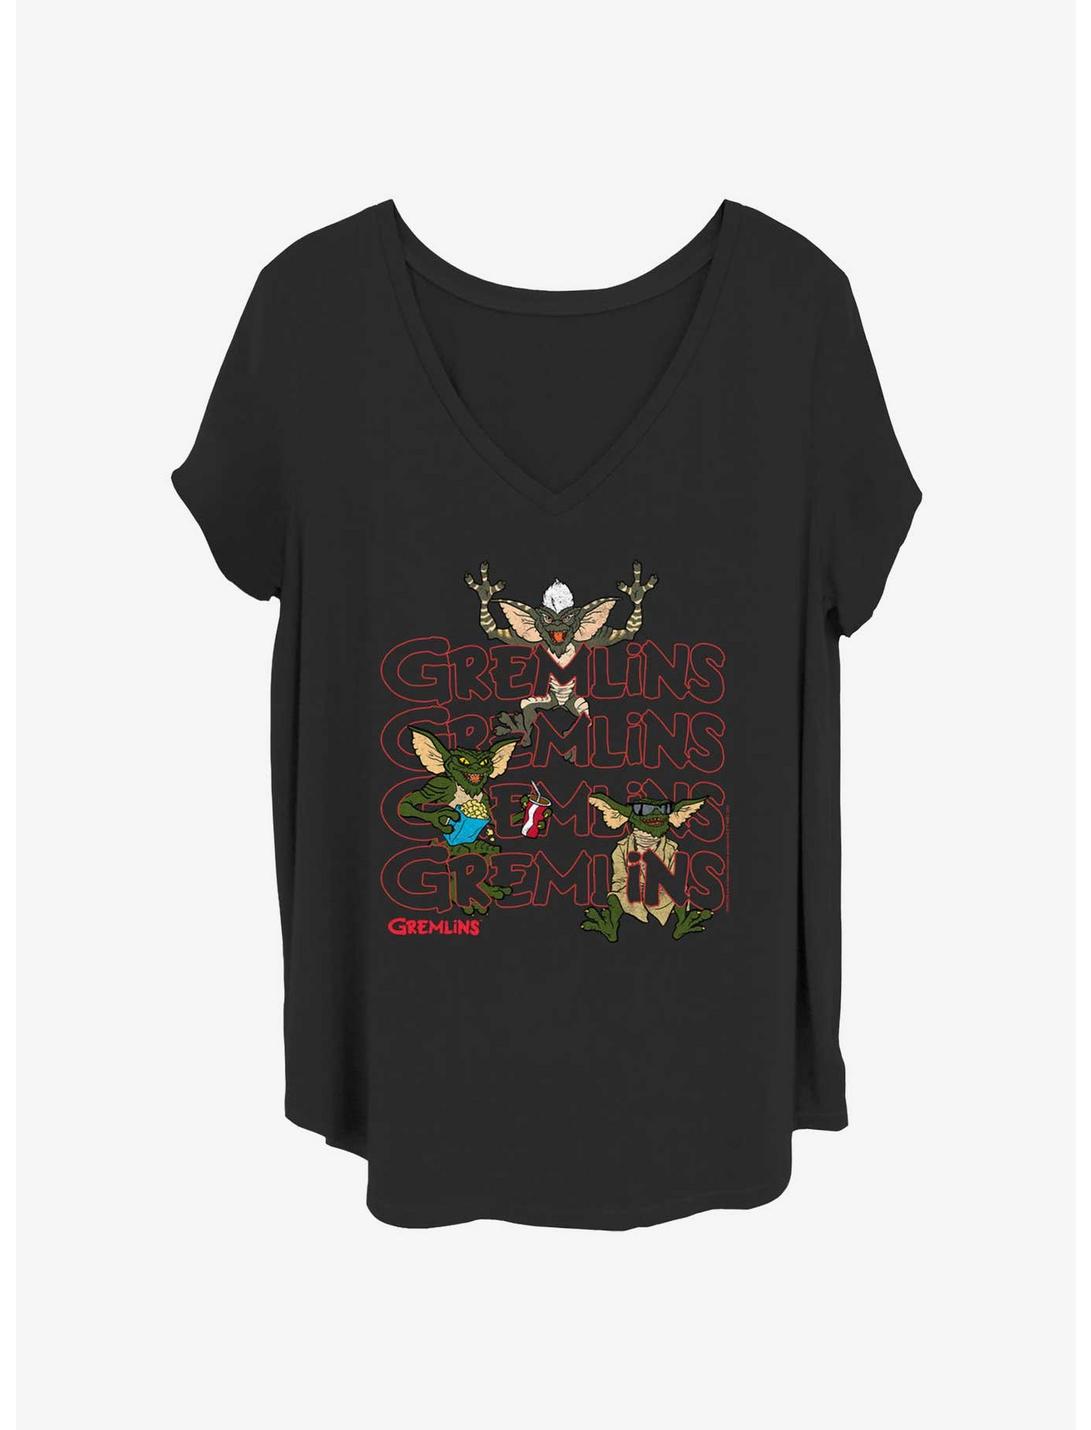 Gremlins Gremlins Stack Girls T-Shirt Plus Size, BLACK, hi-res